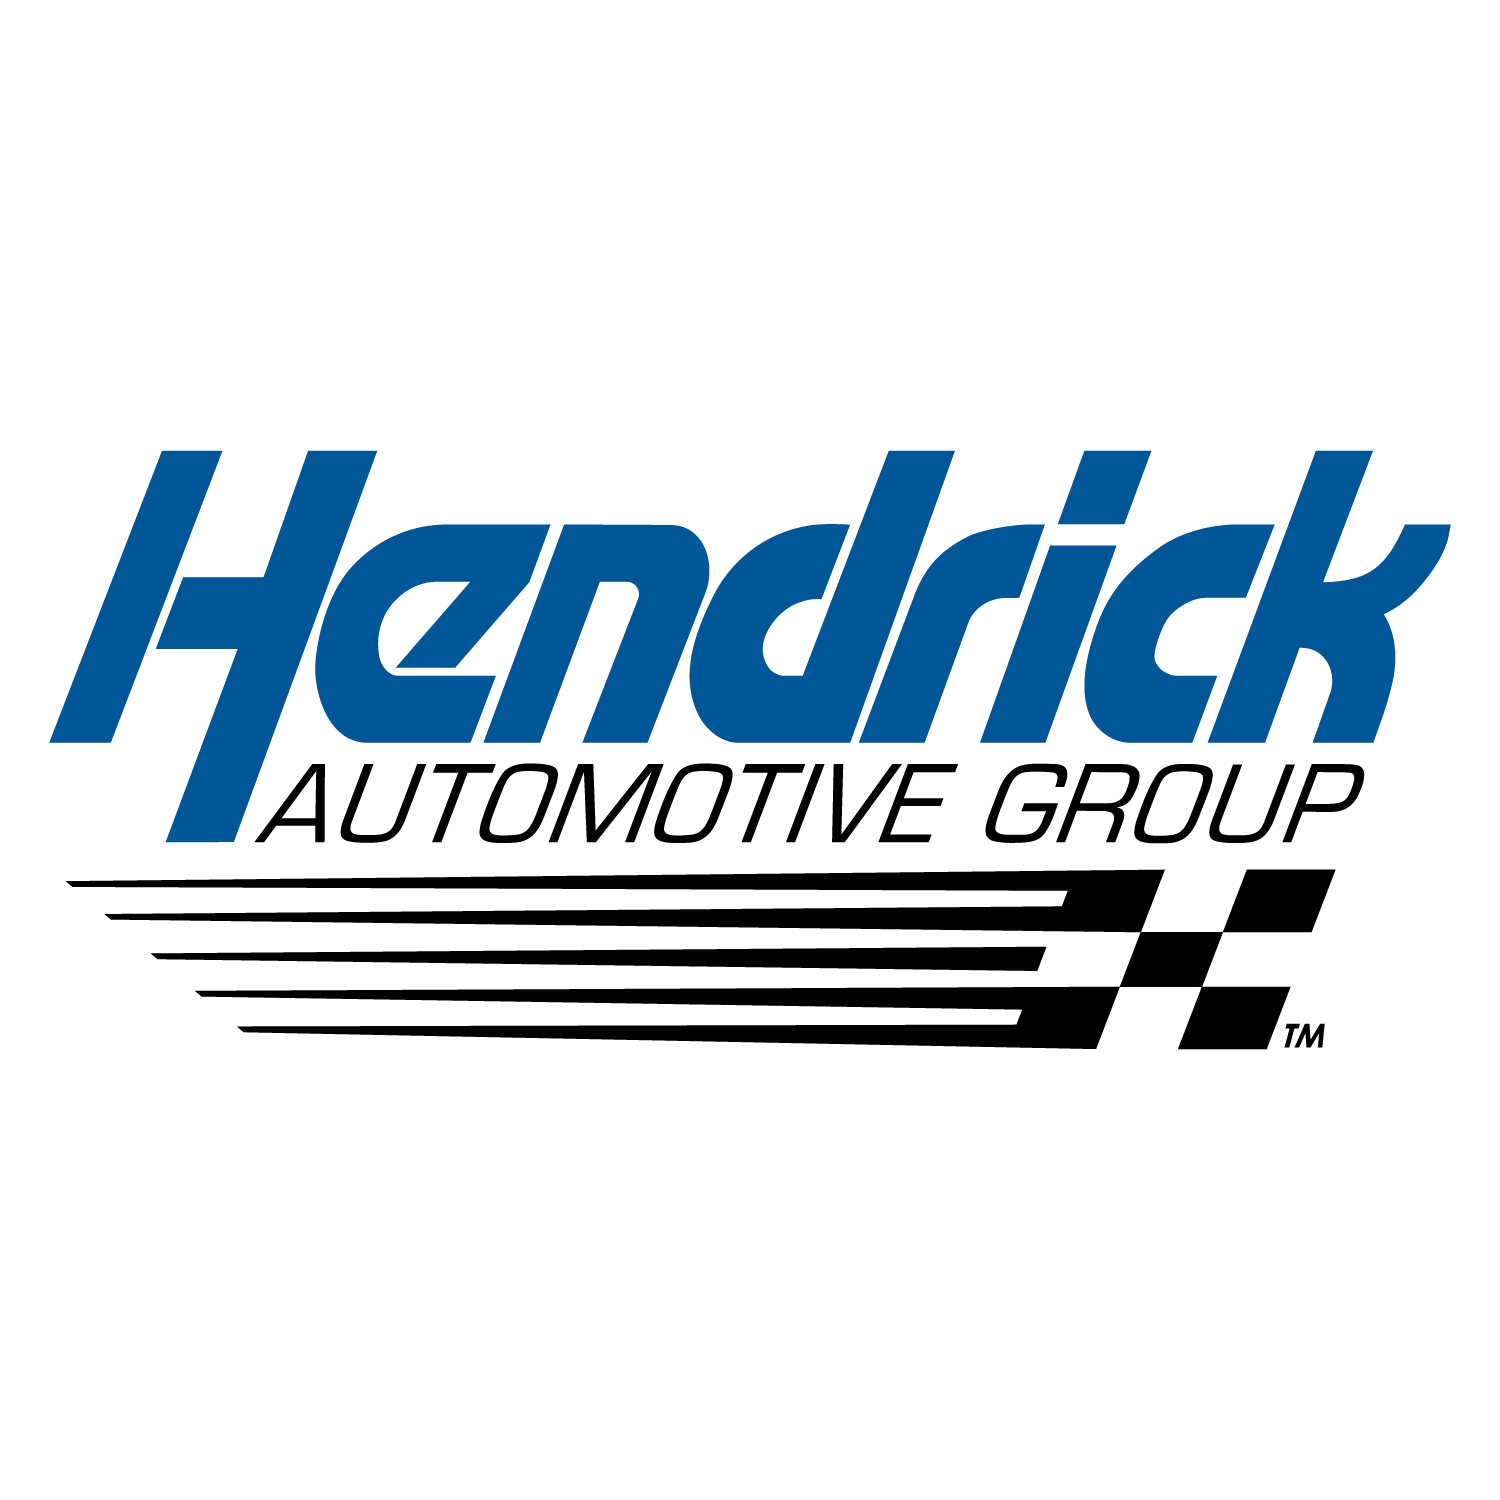 Hendrick